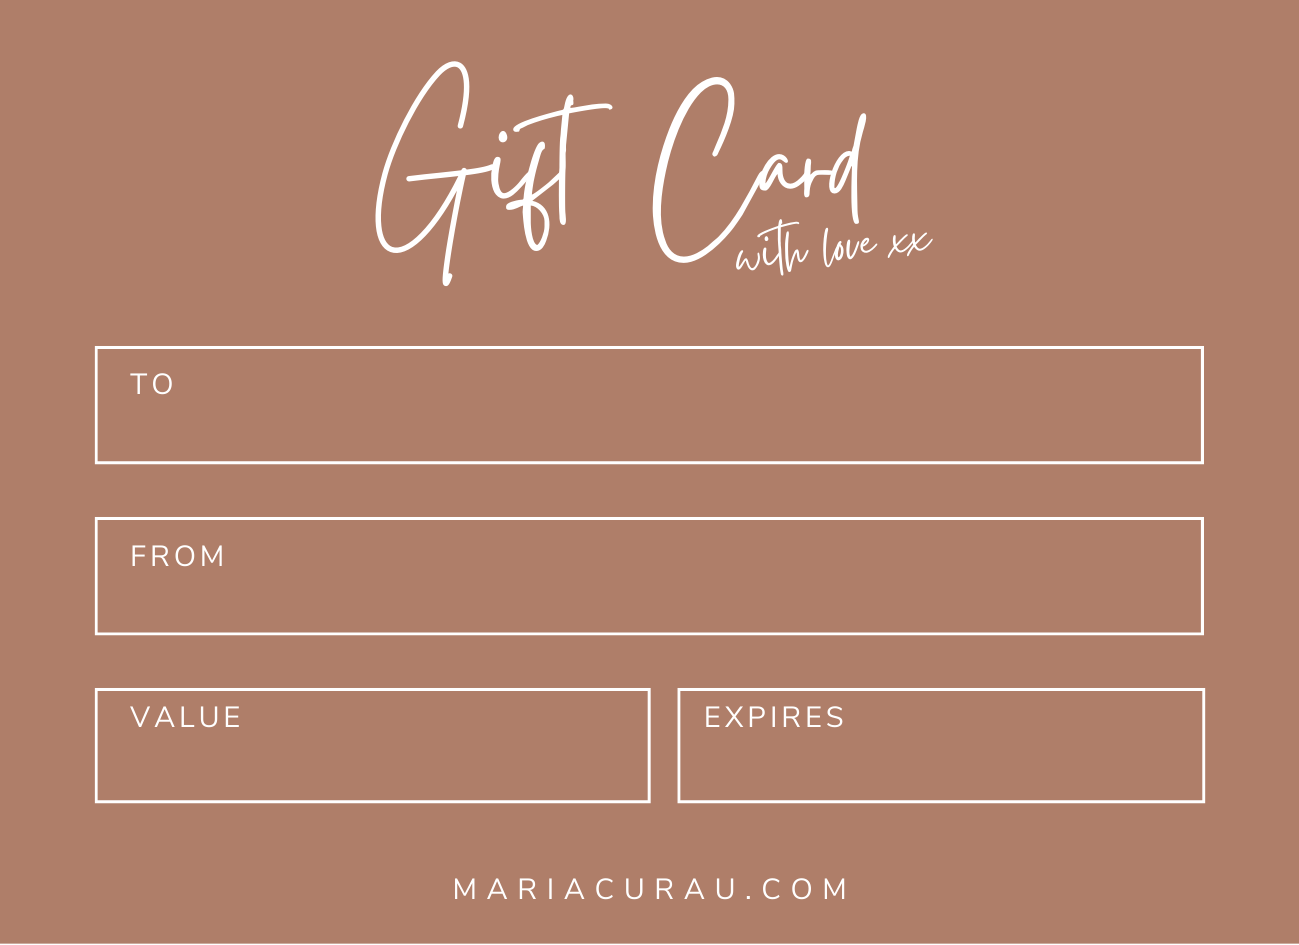 2.Maria-Curau-Gift-Card